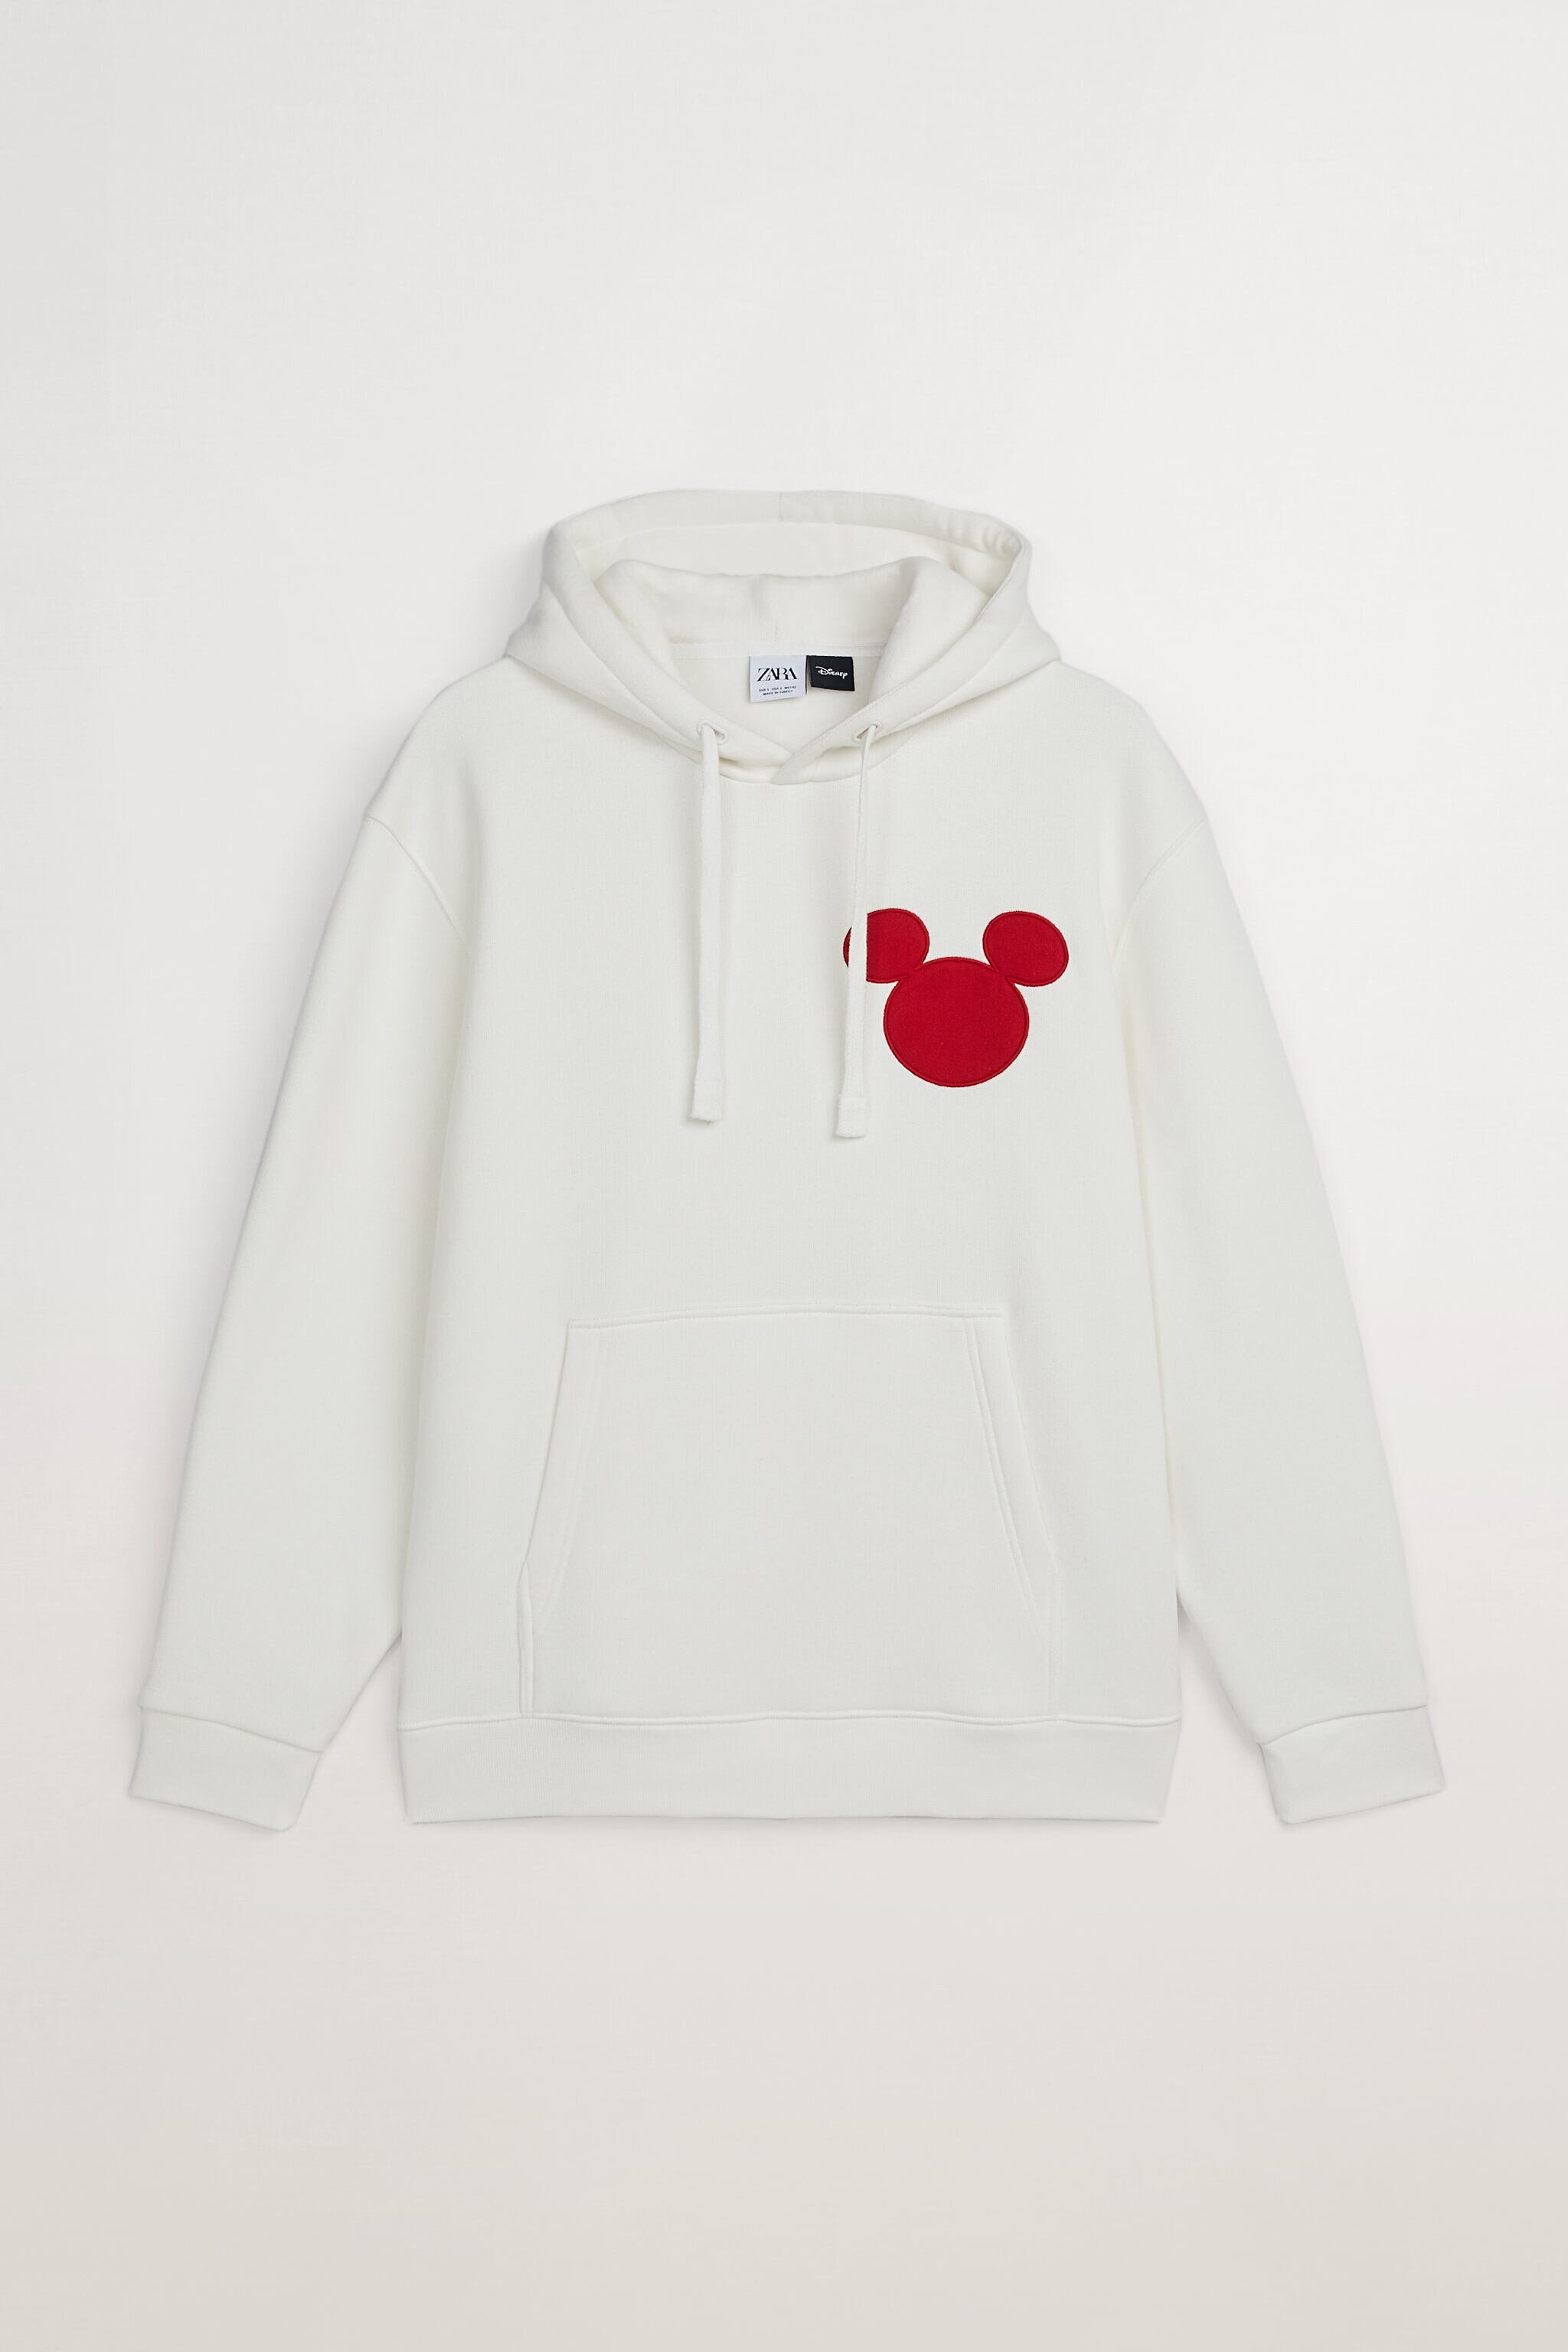 Mickey Mouse Sweatshirt, ₱1,595